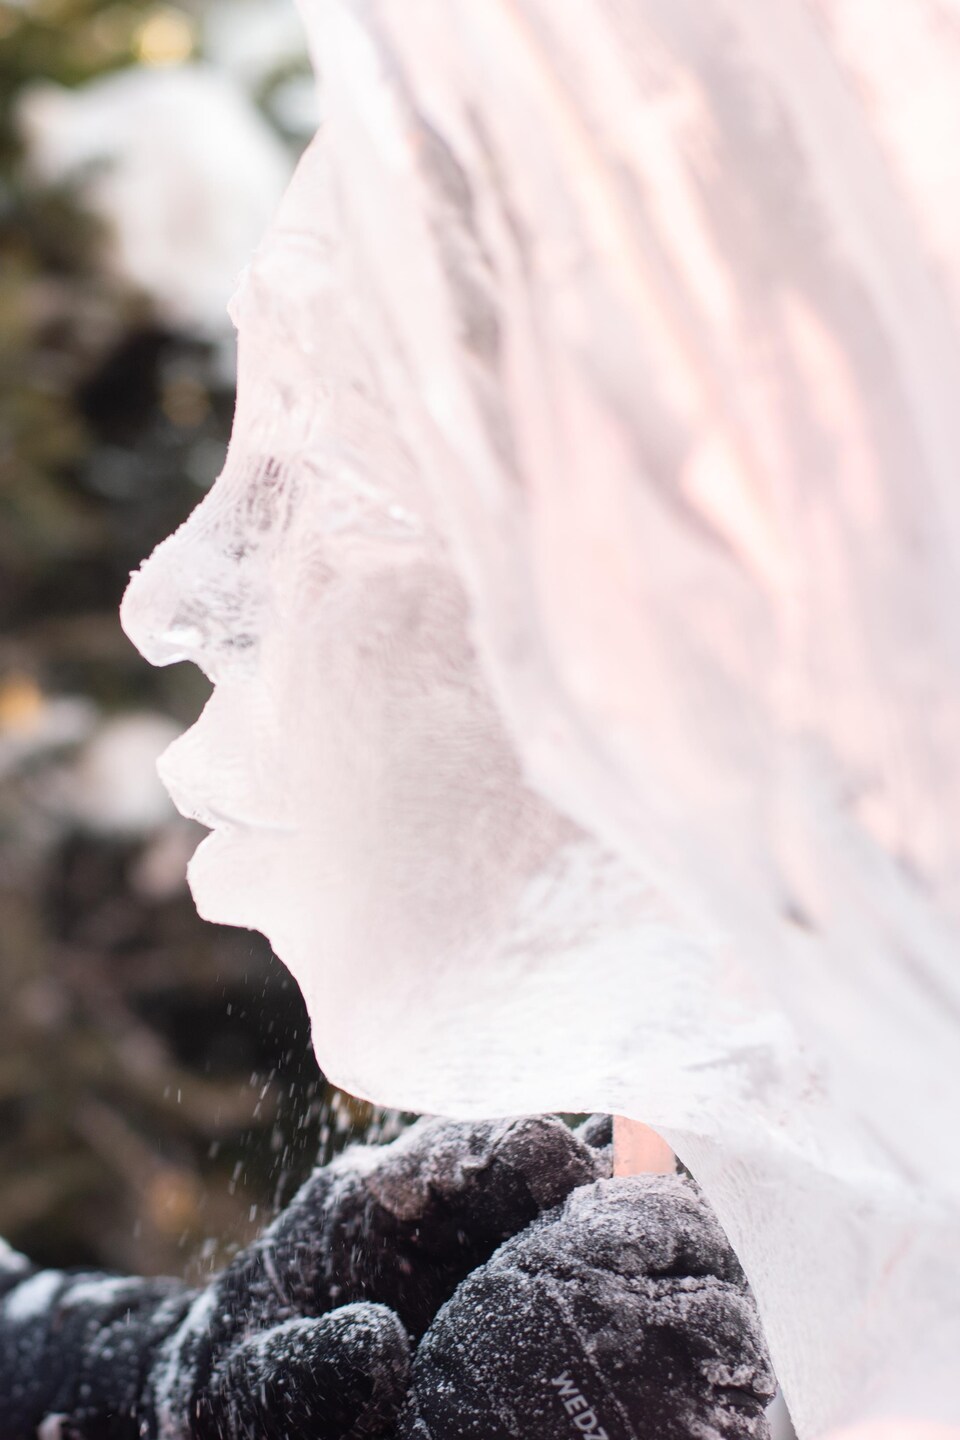 La sculpteuse se tient, de profil, face au visage de l'ange qu'elle sculpte.